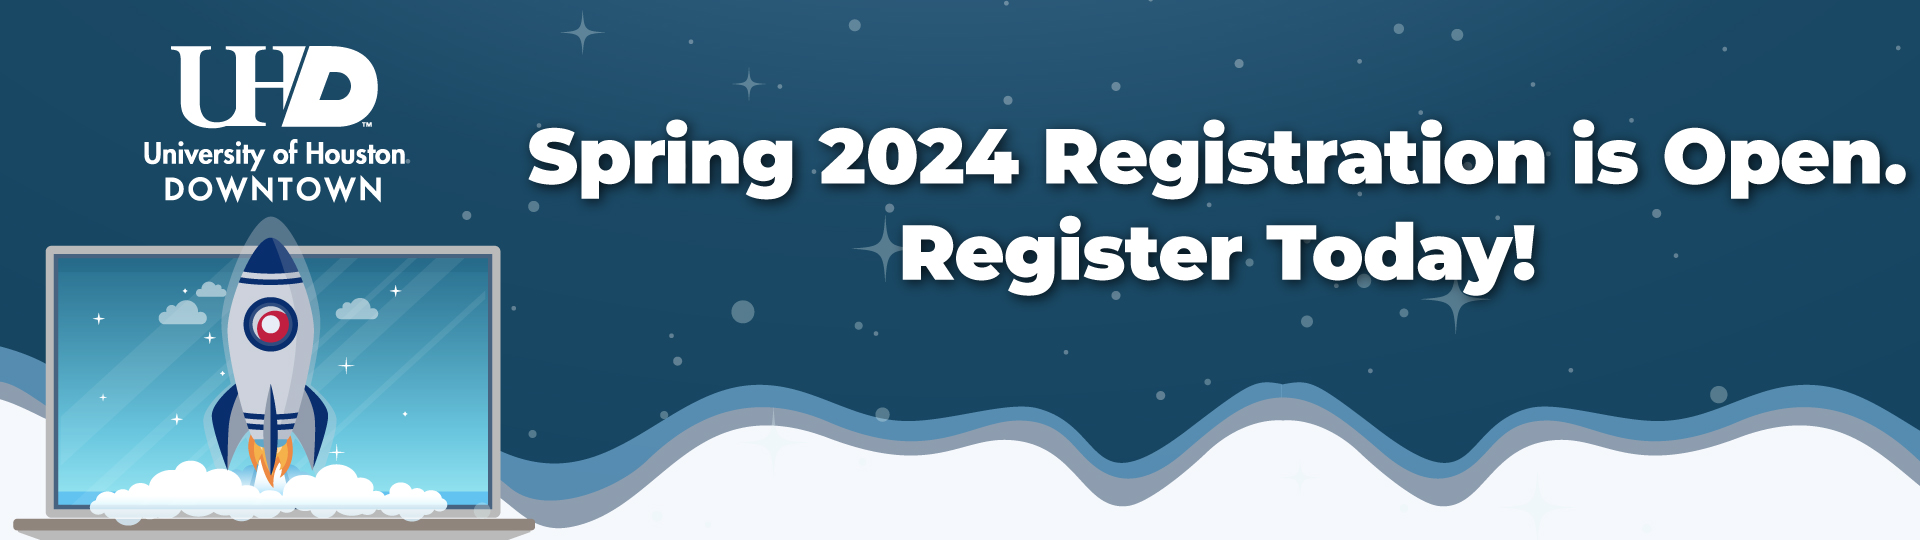 Rocket on laptop. Spring 2024 Registration is Open. Register Today!